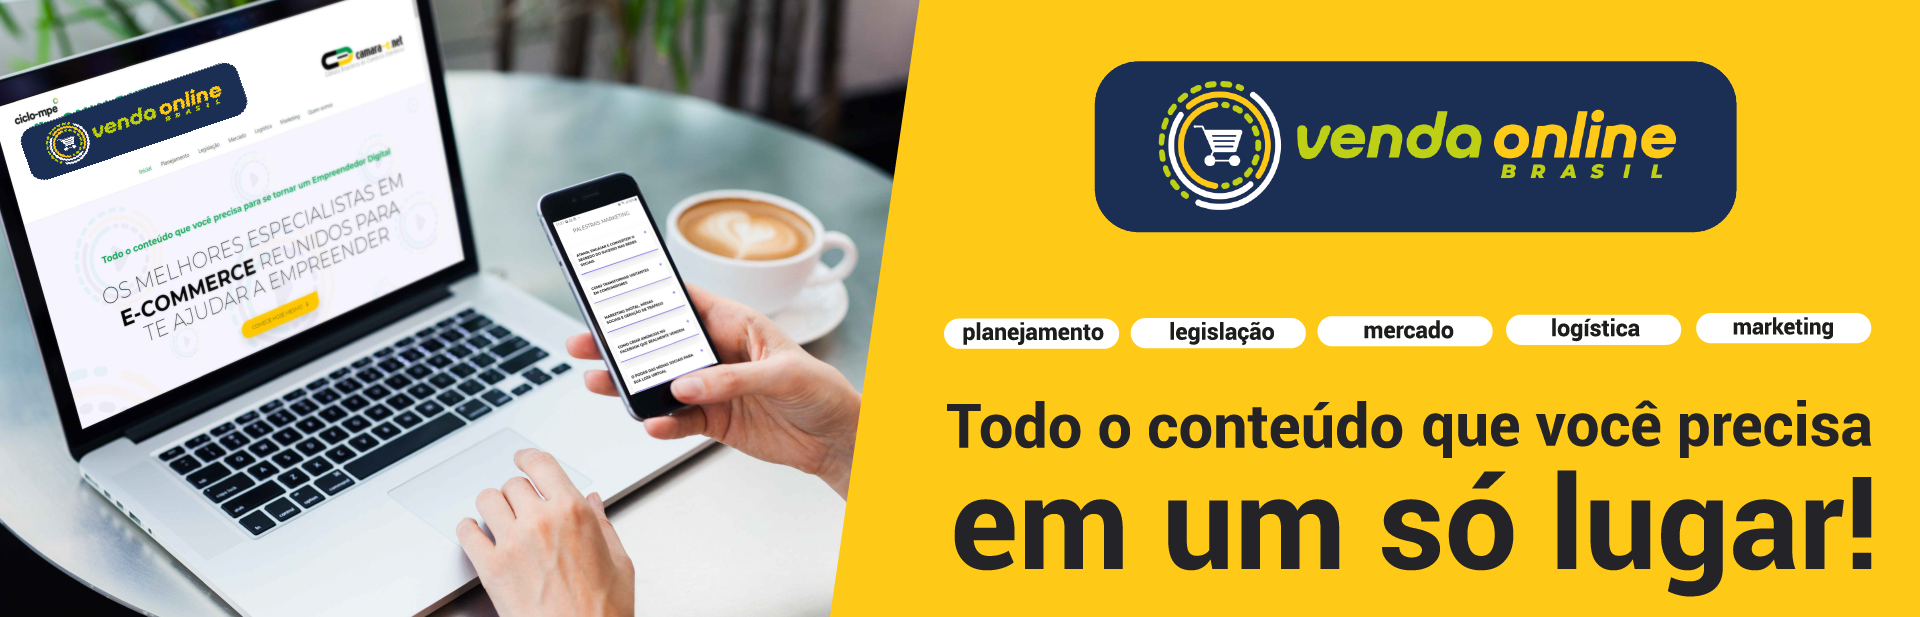 Venda Online Brasil